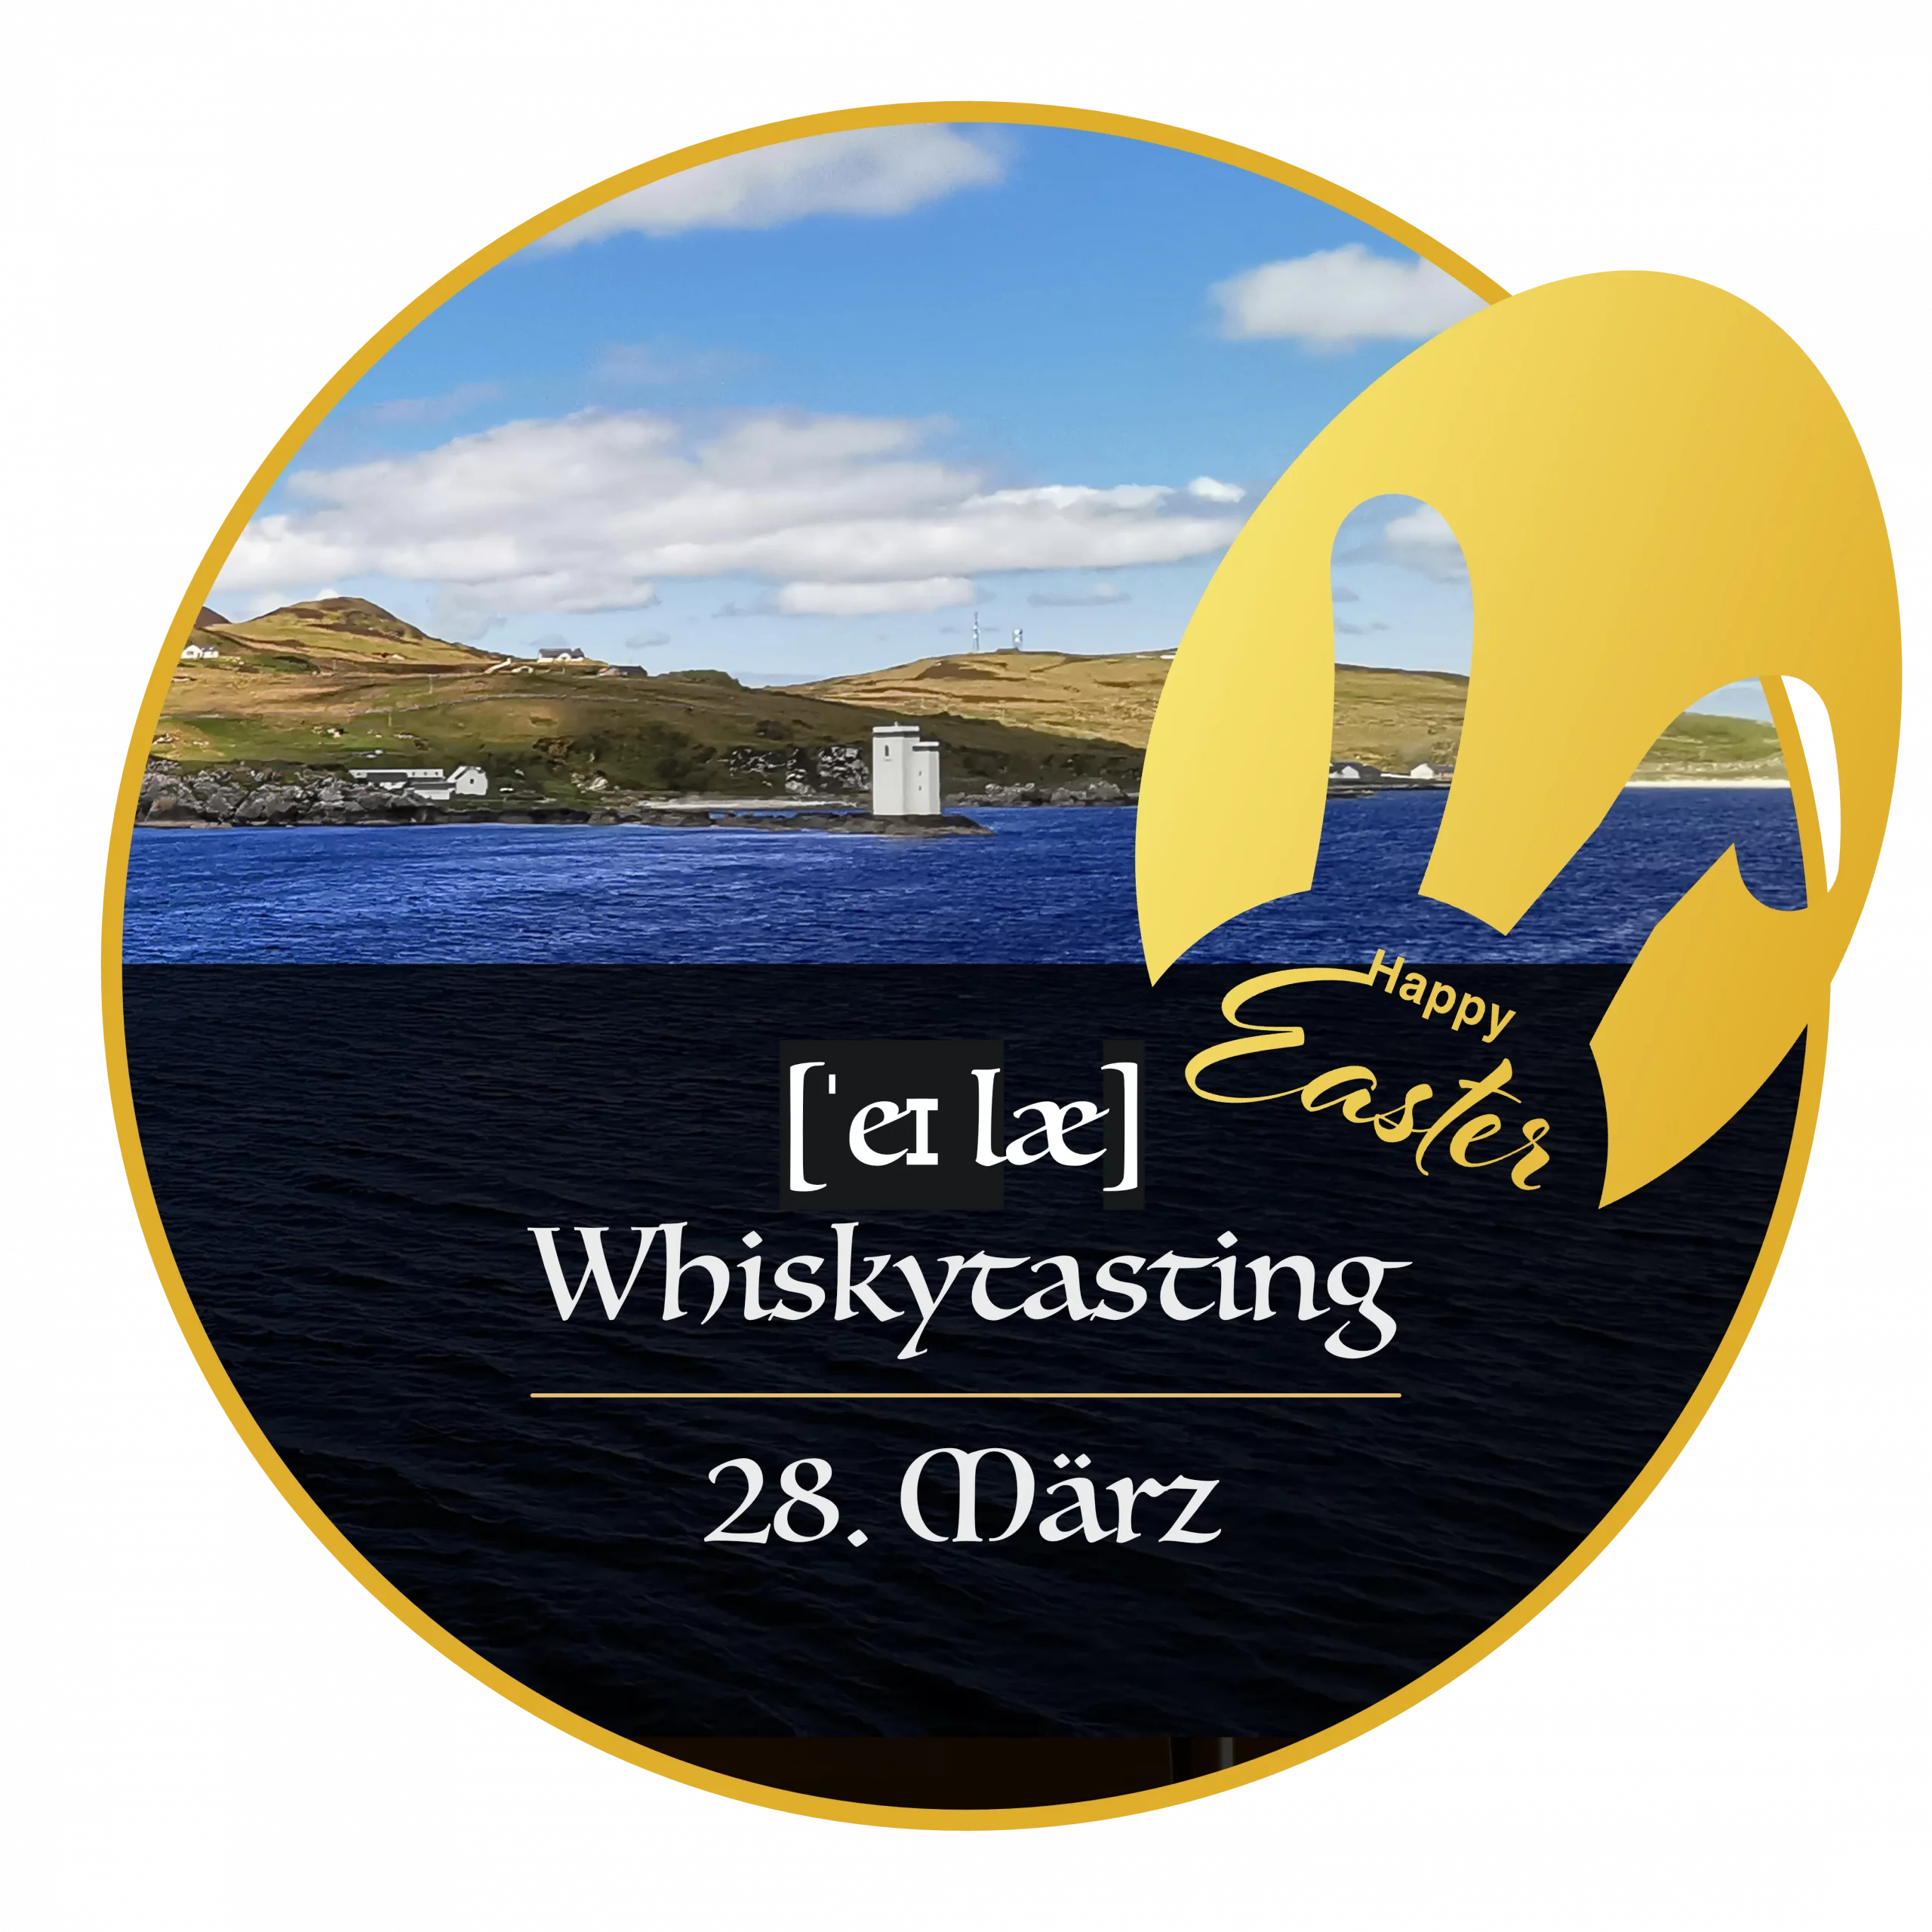 Grafik für das Special Islay Whisky Tasting zu Ostern mit dem Foto der Insel Islay und einem Osterei